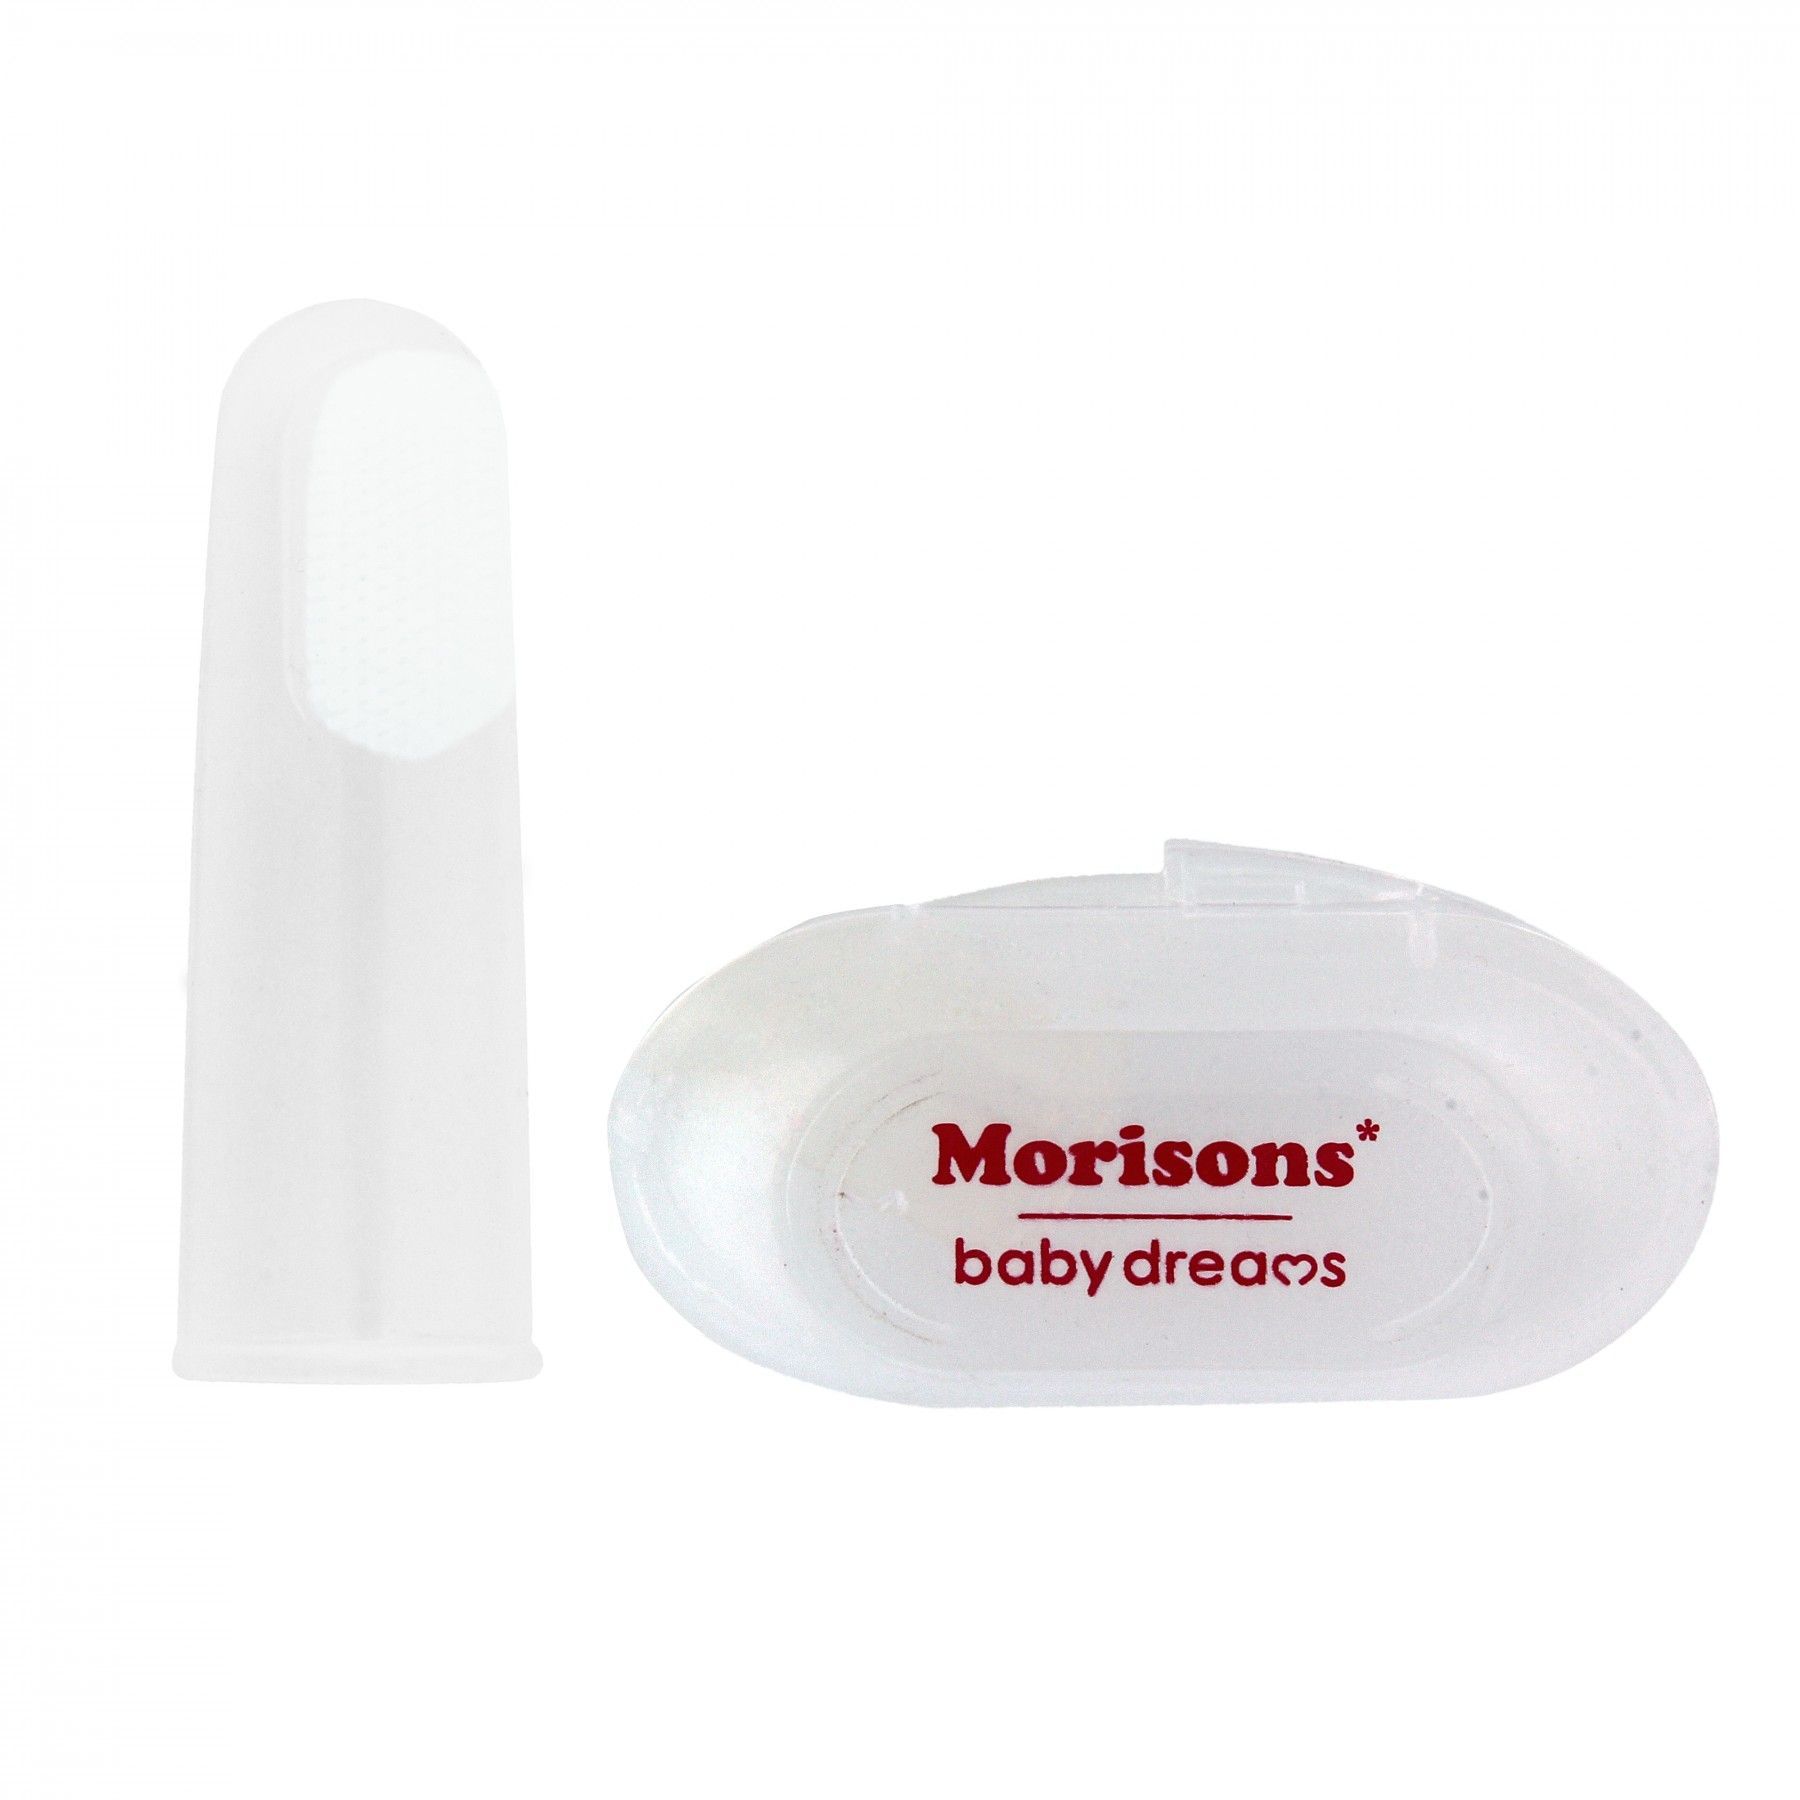 Morisons Baby Dream Teething Finger Brush With Hygiene Case